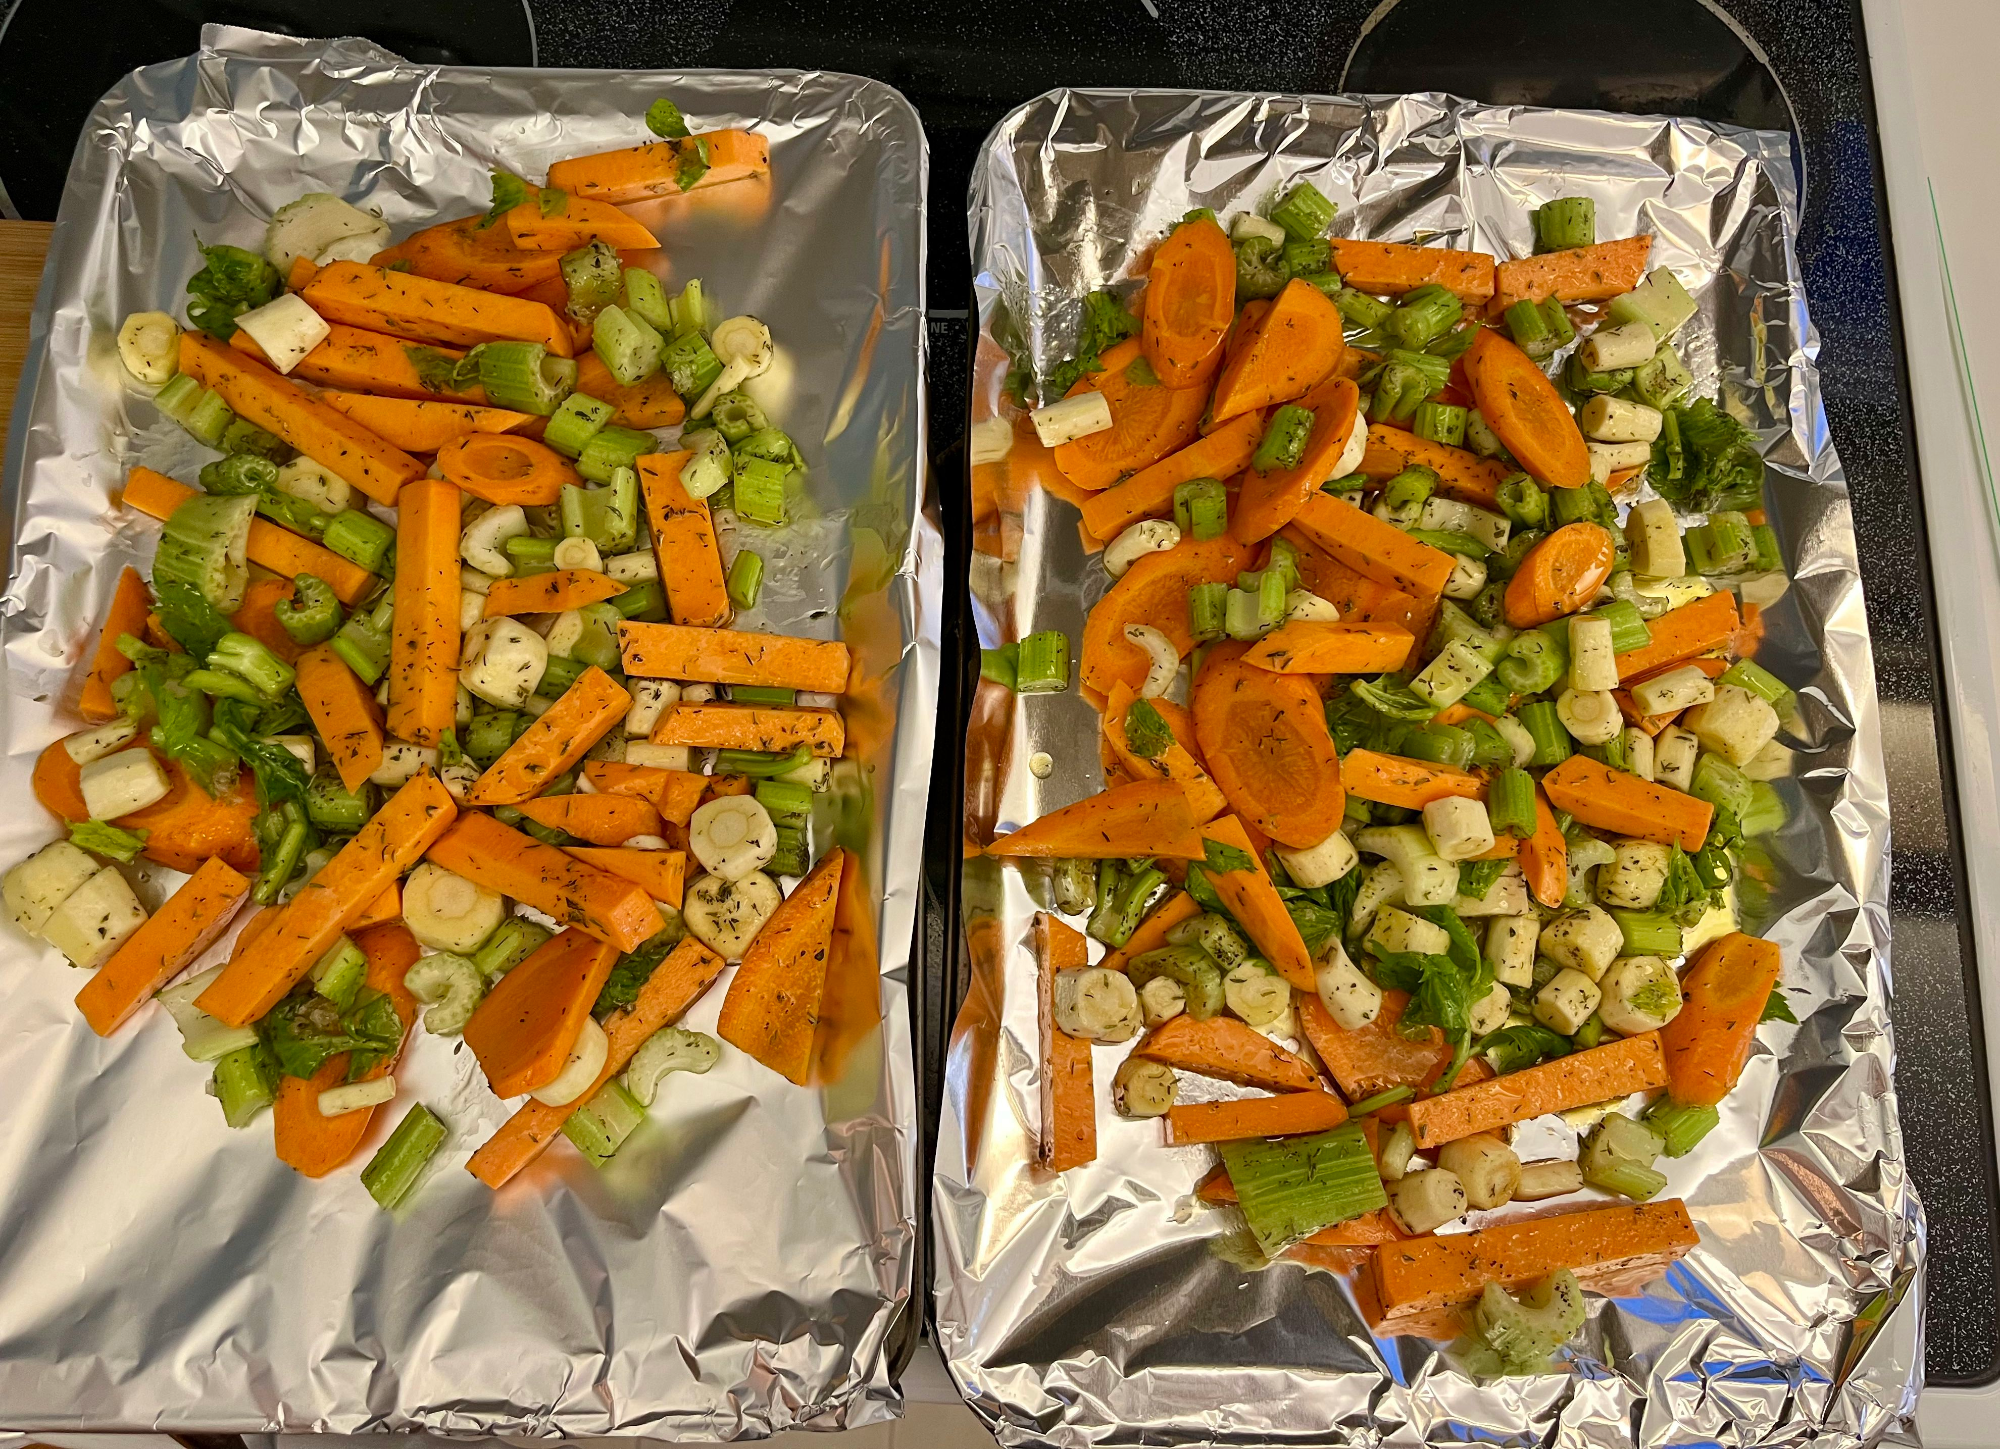 Vegetables on foiled pans.